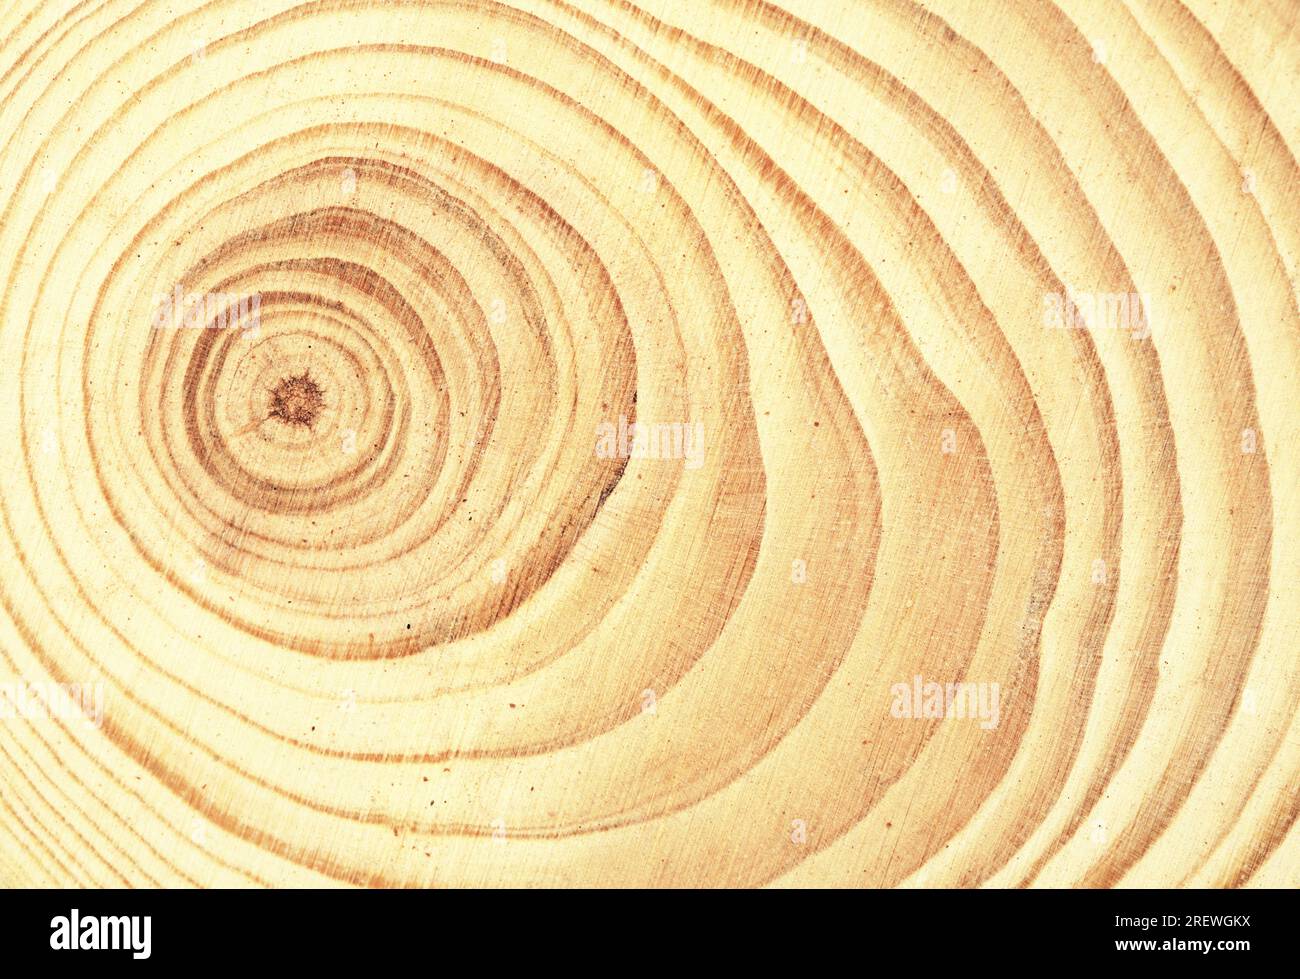 Runder Schnitt durch einen Stamm eines kleinen Baumes mit sichtbaren Jahresringen Stockfoto